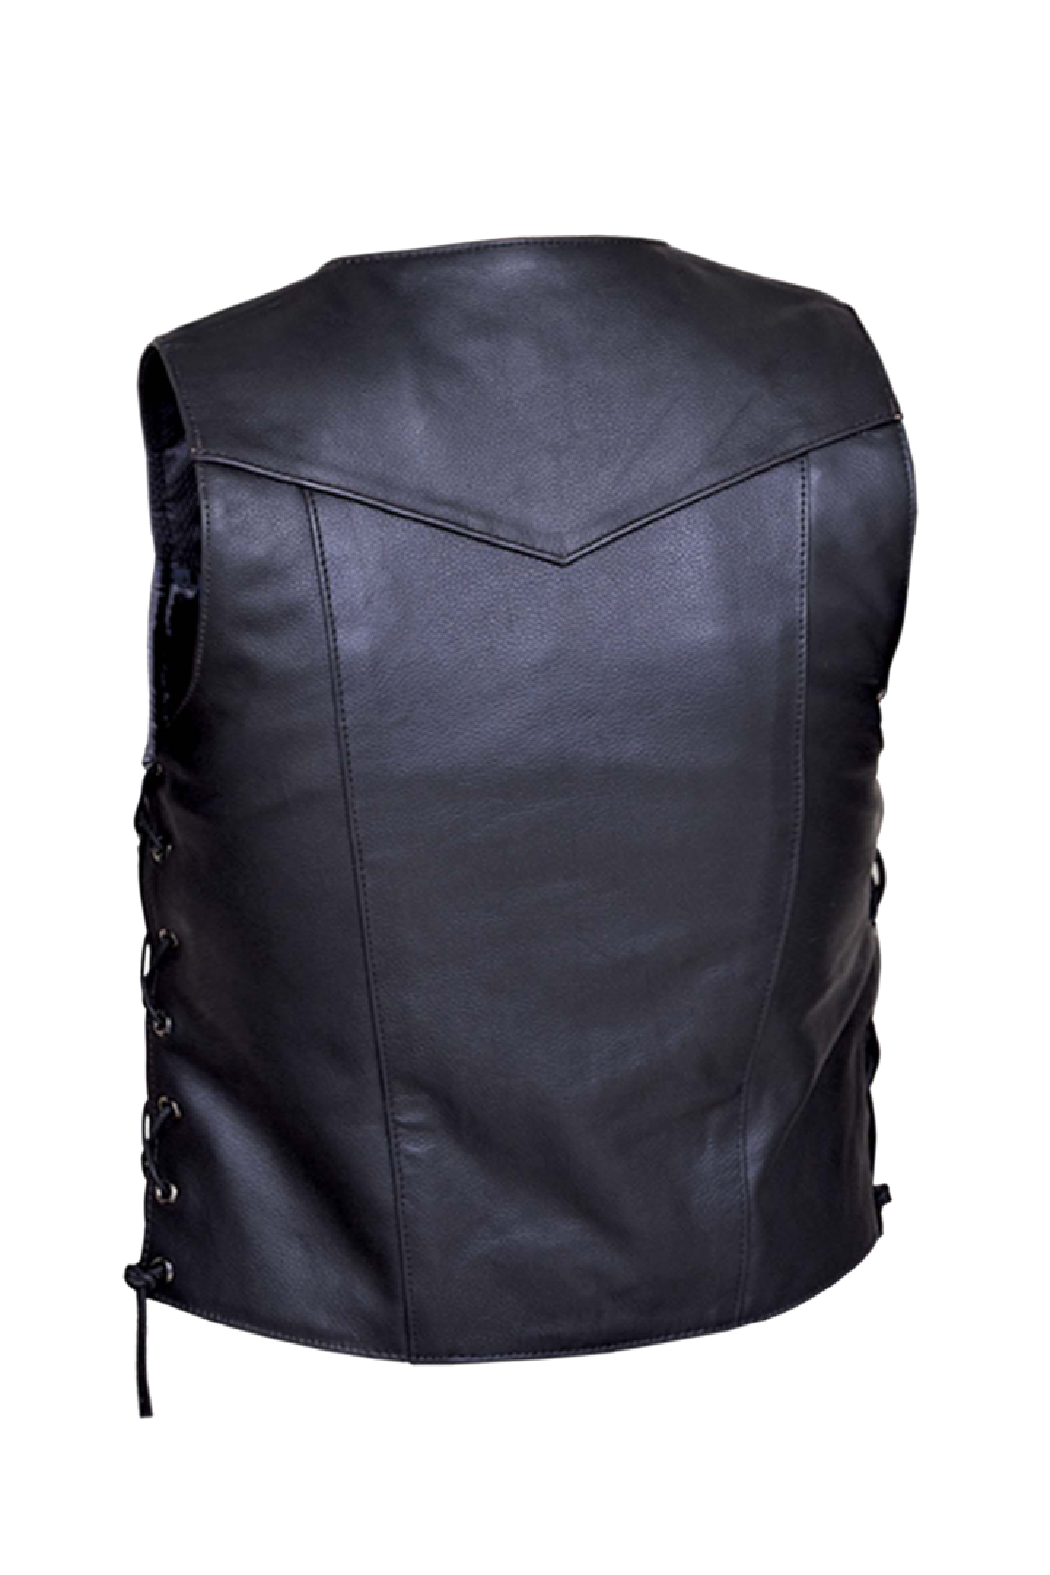 Unik Premium 1.2mm Leather Vest.